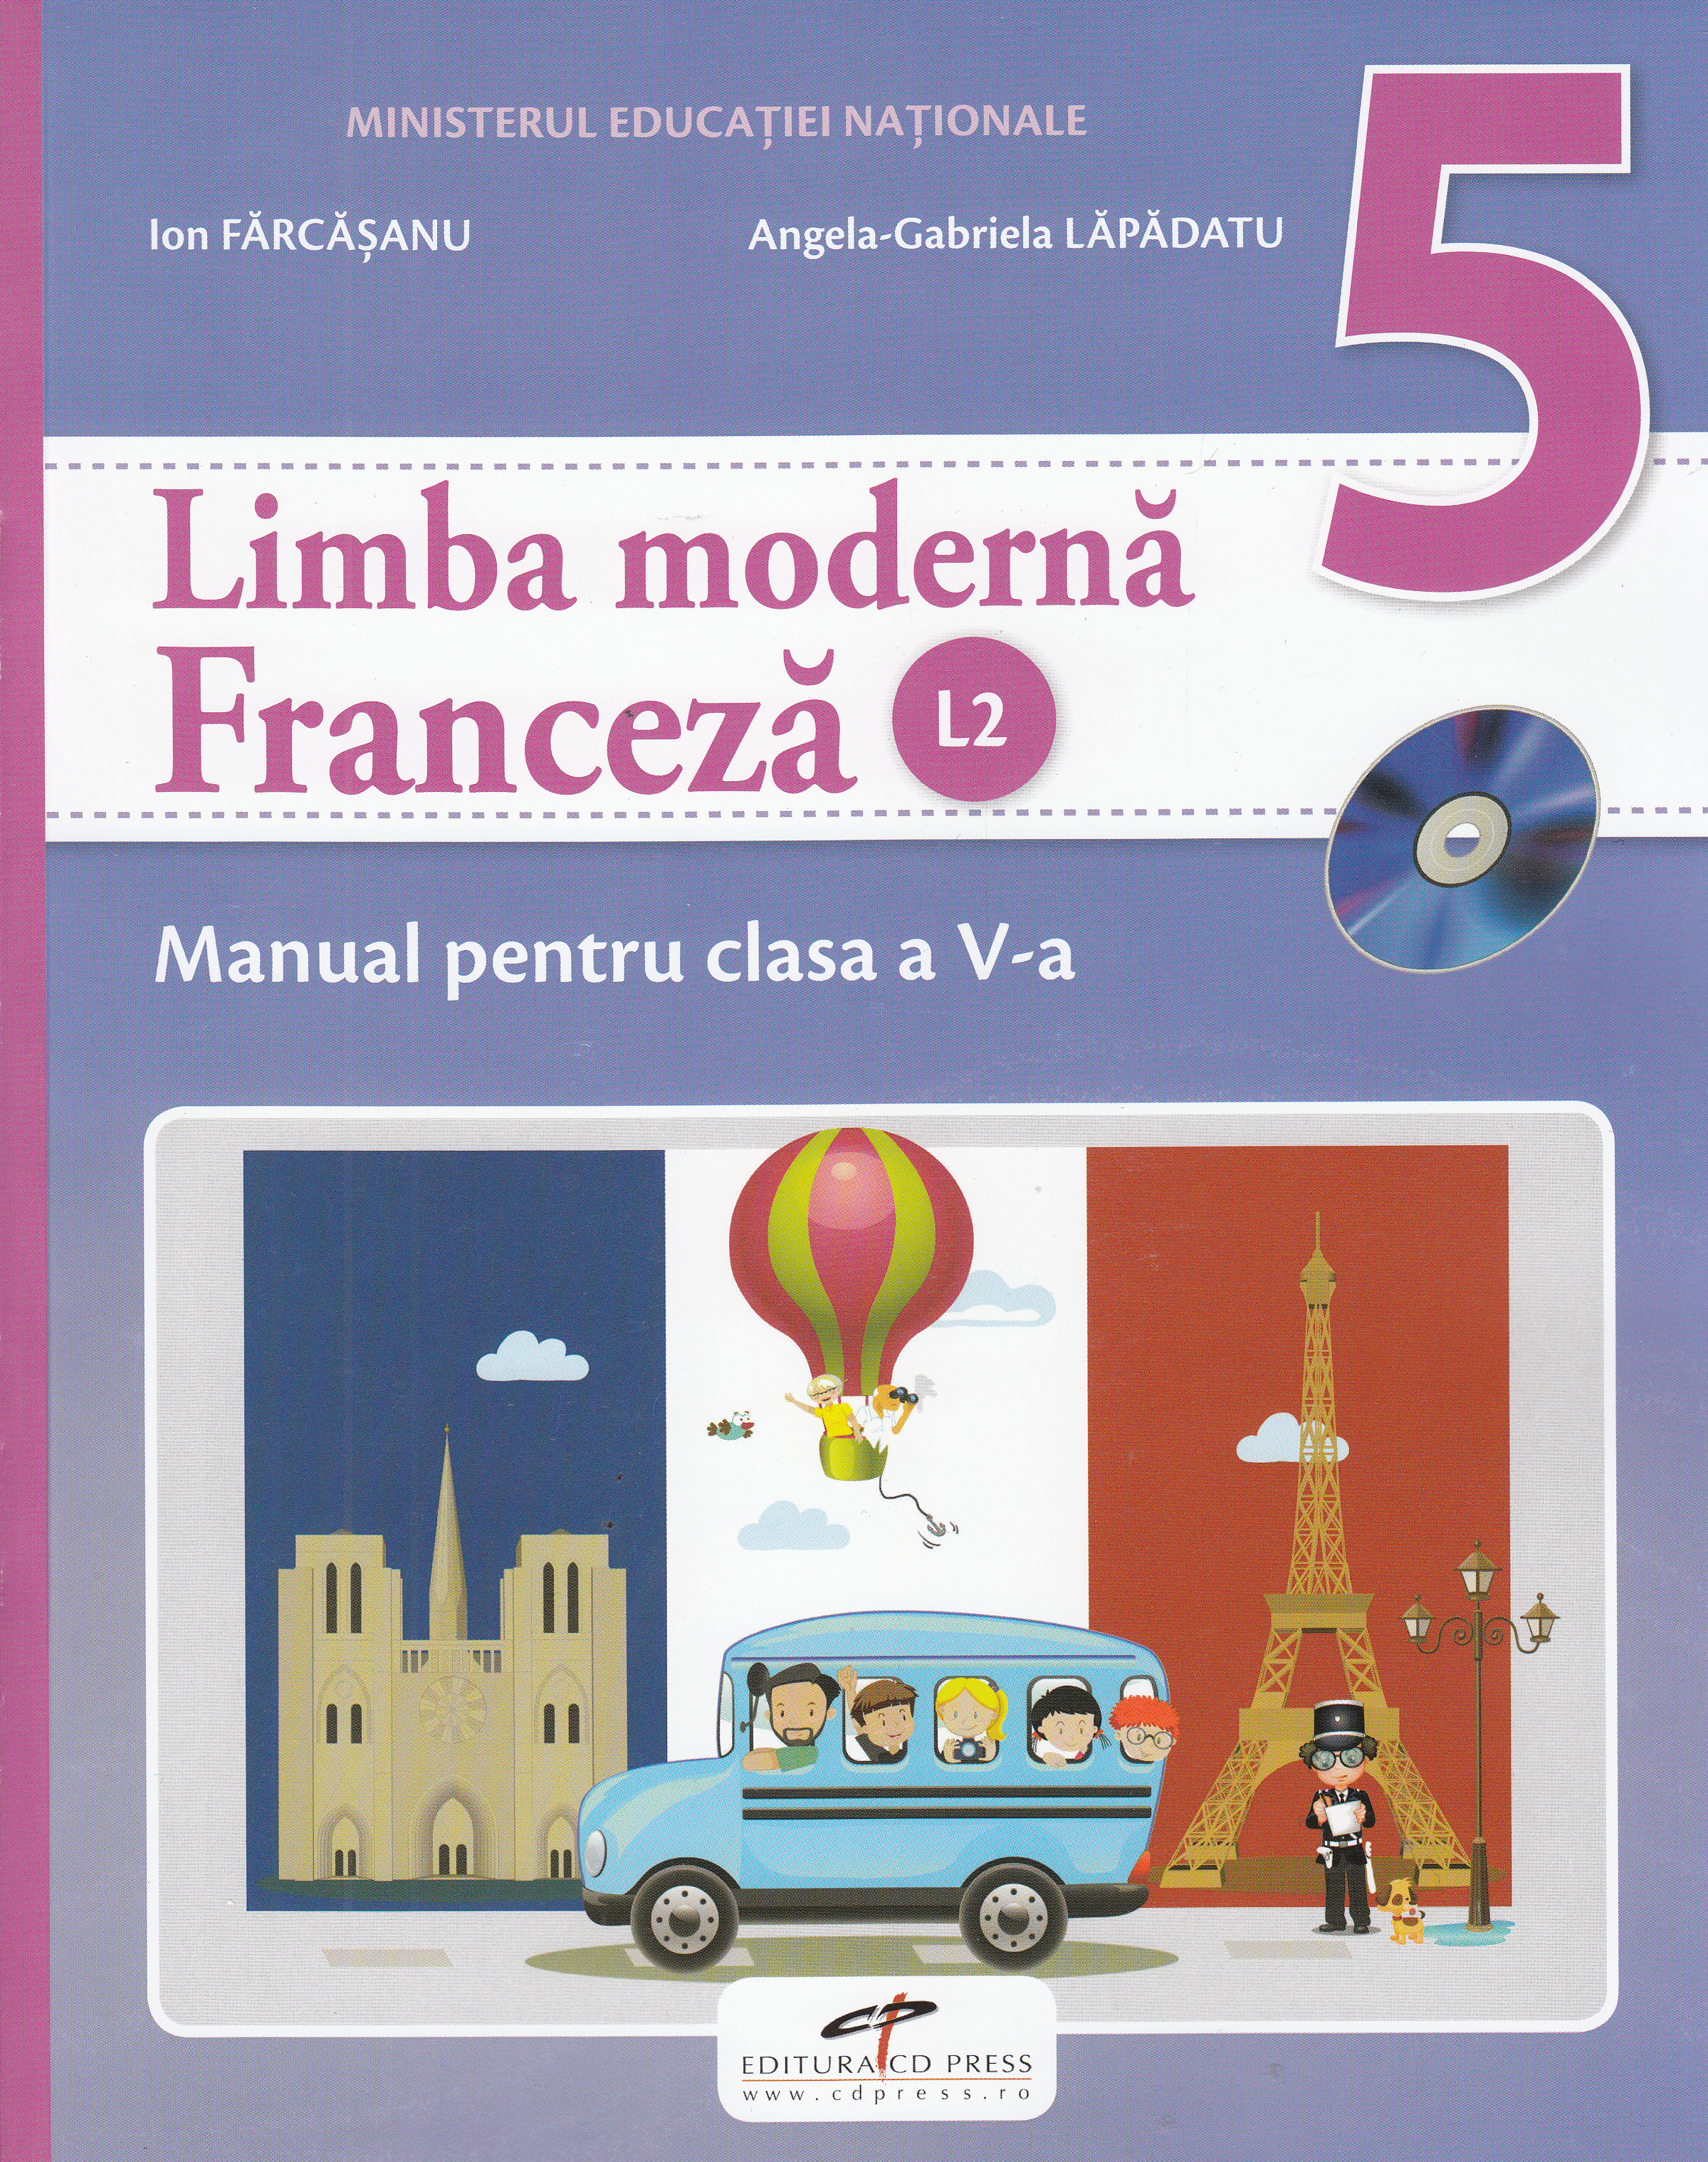 Franceza (limba moderna 2) - Clasa 5 - Manual + CD - Ion Farcasanu, Angela-Gabriela Lapadatu